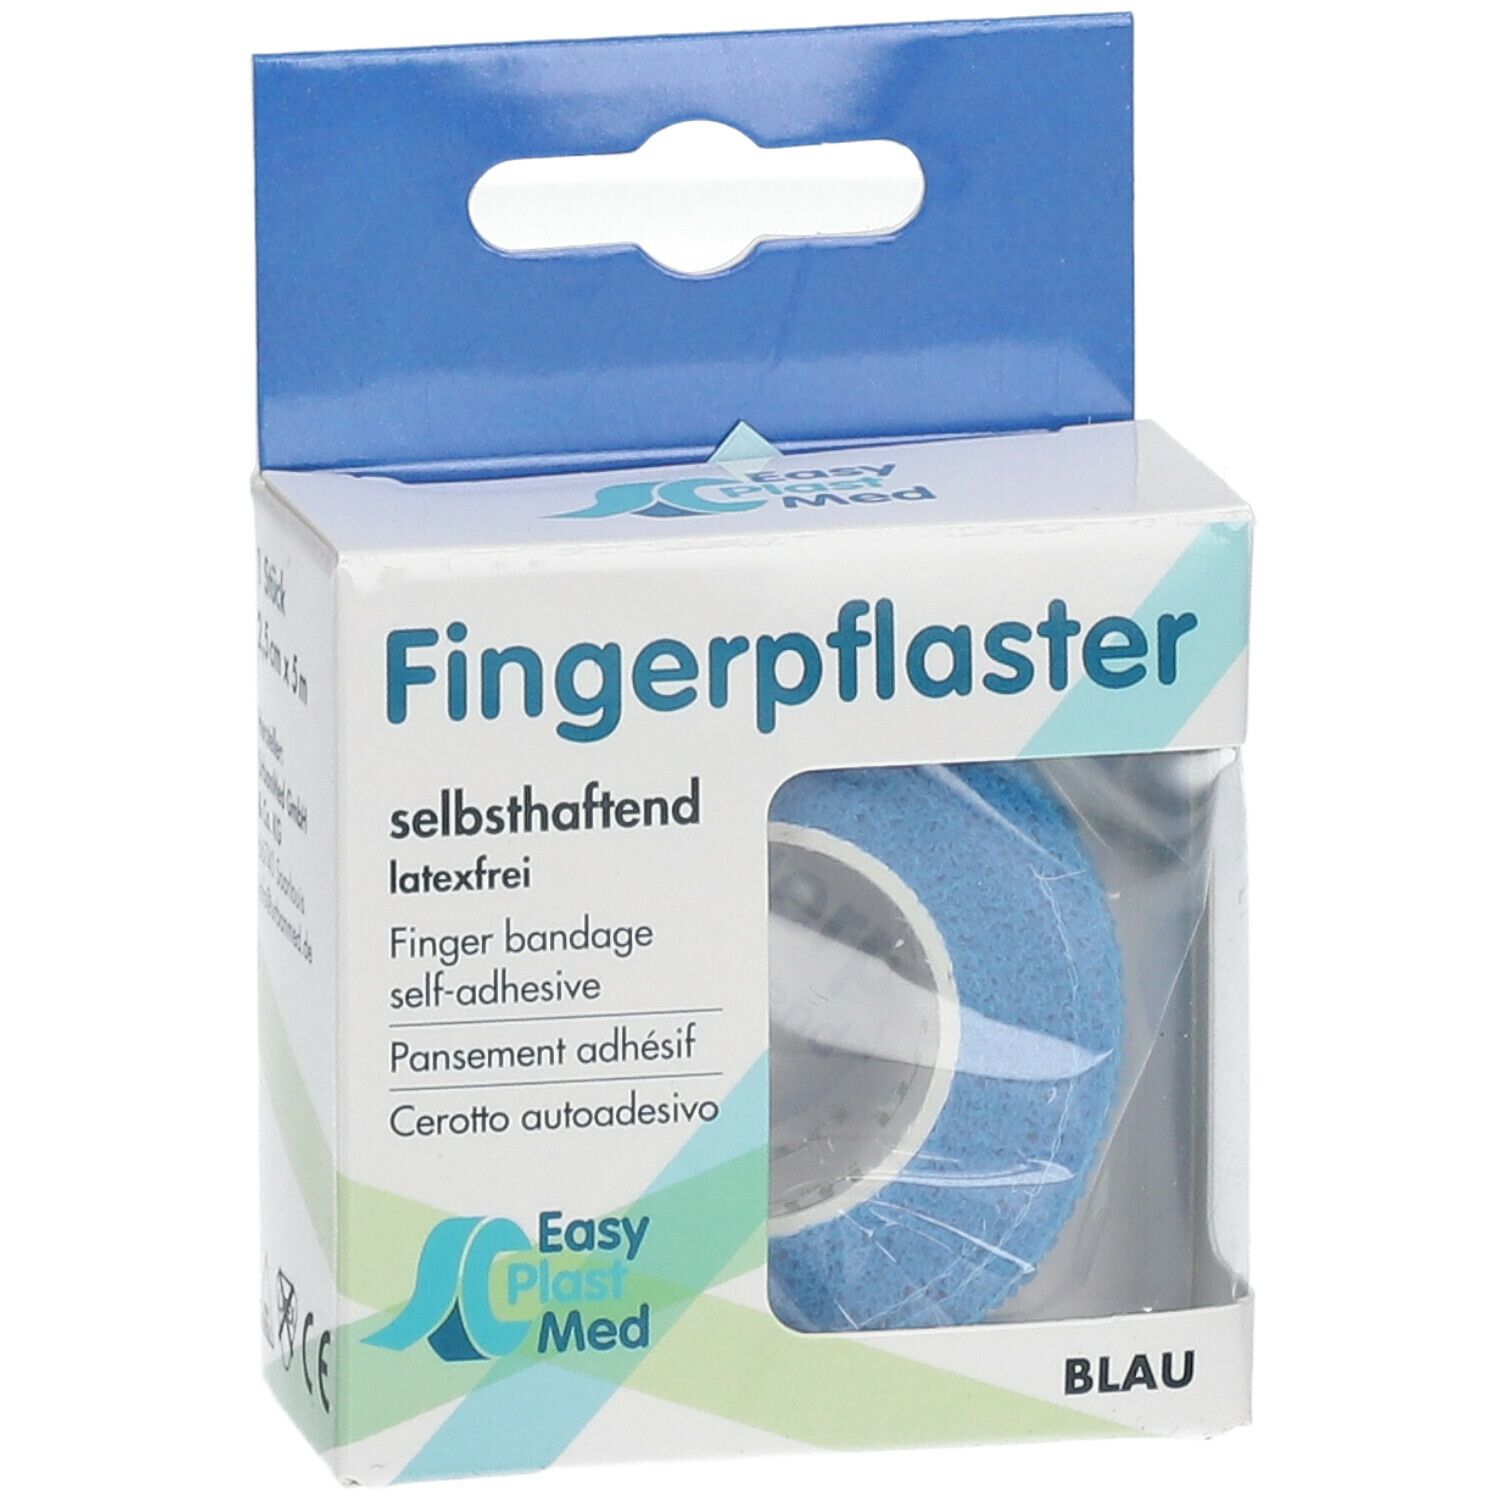 Easy Plast Med Fingerpflaster 2,5 cm x 5 m blau 1 St - SHOP APOTHEKE